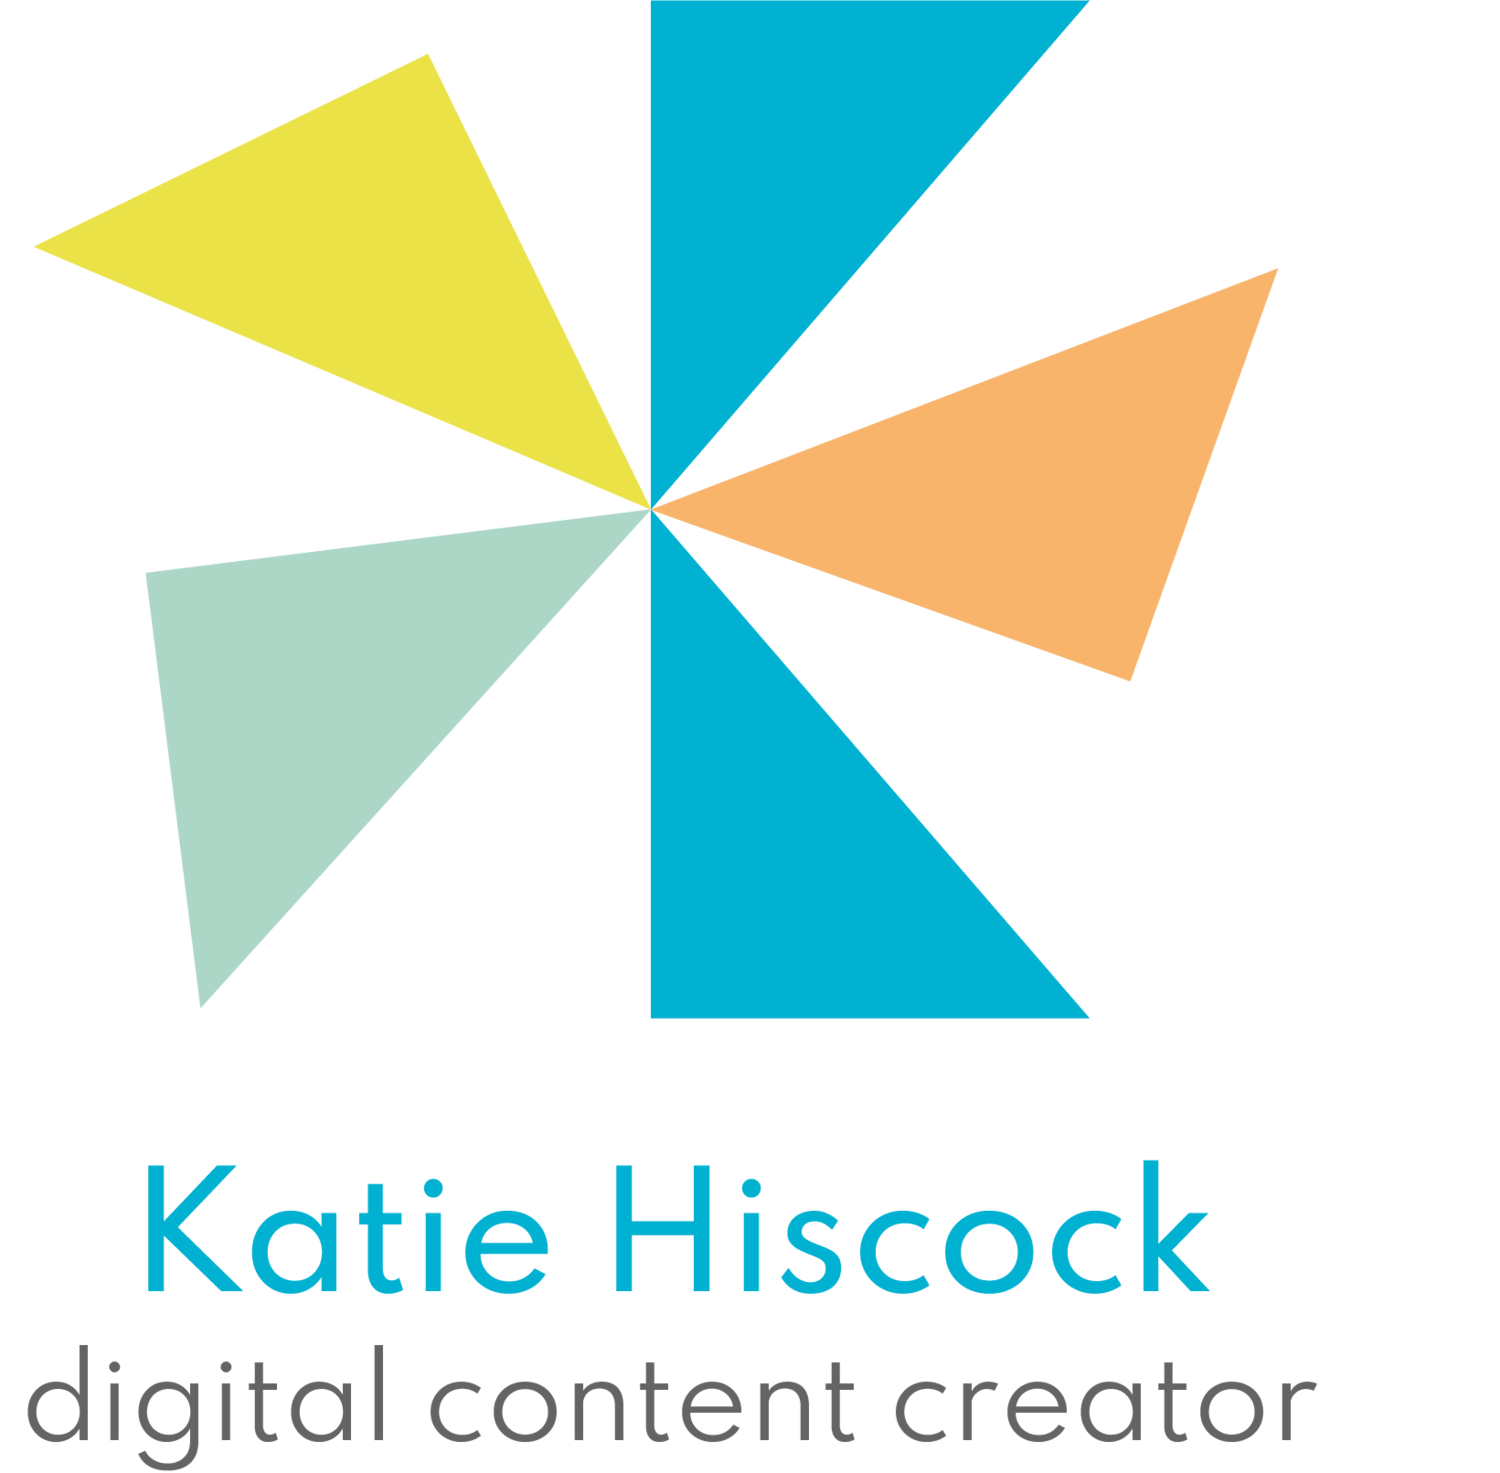 Katie Hiscock